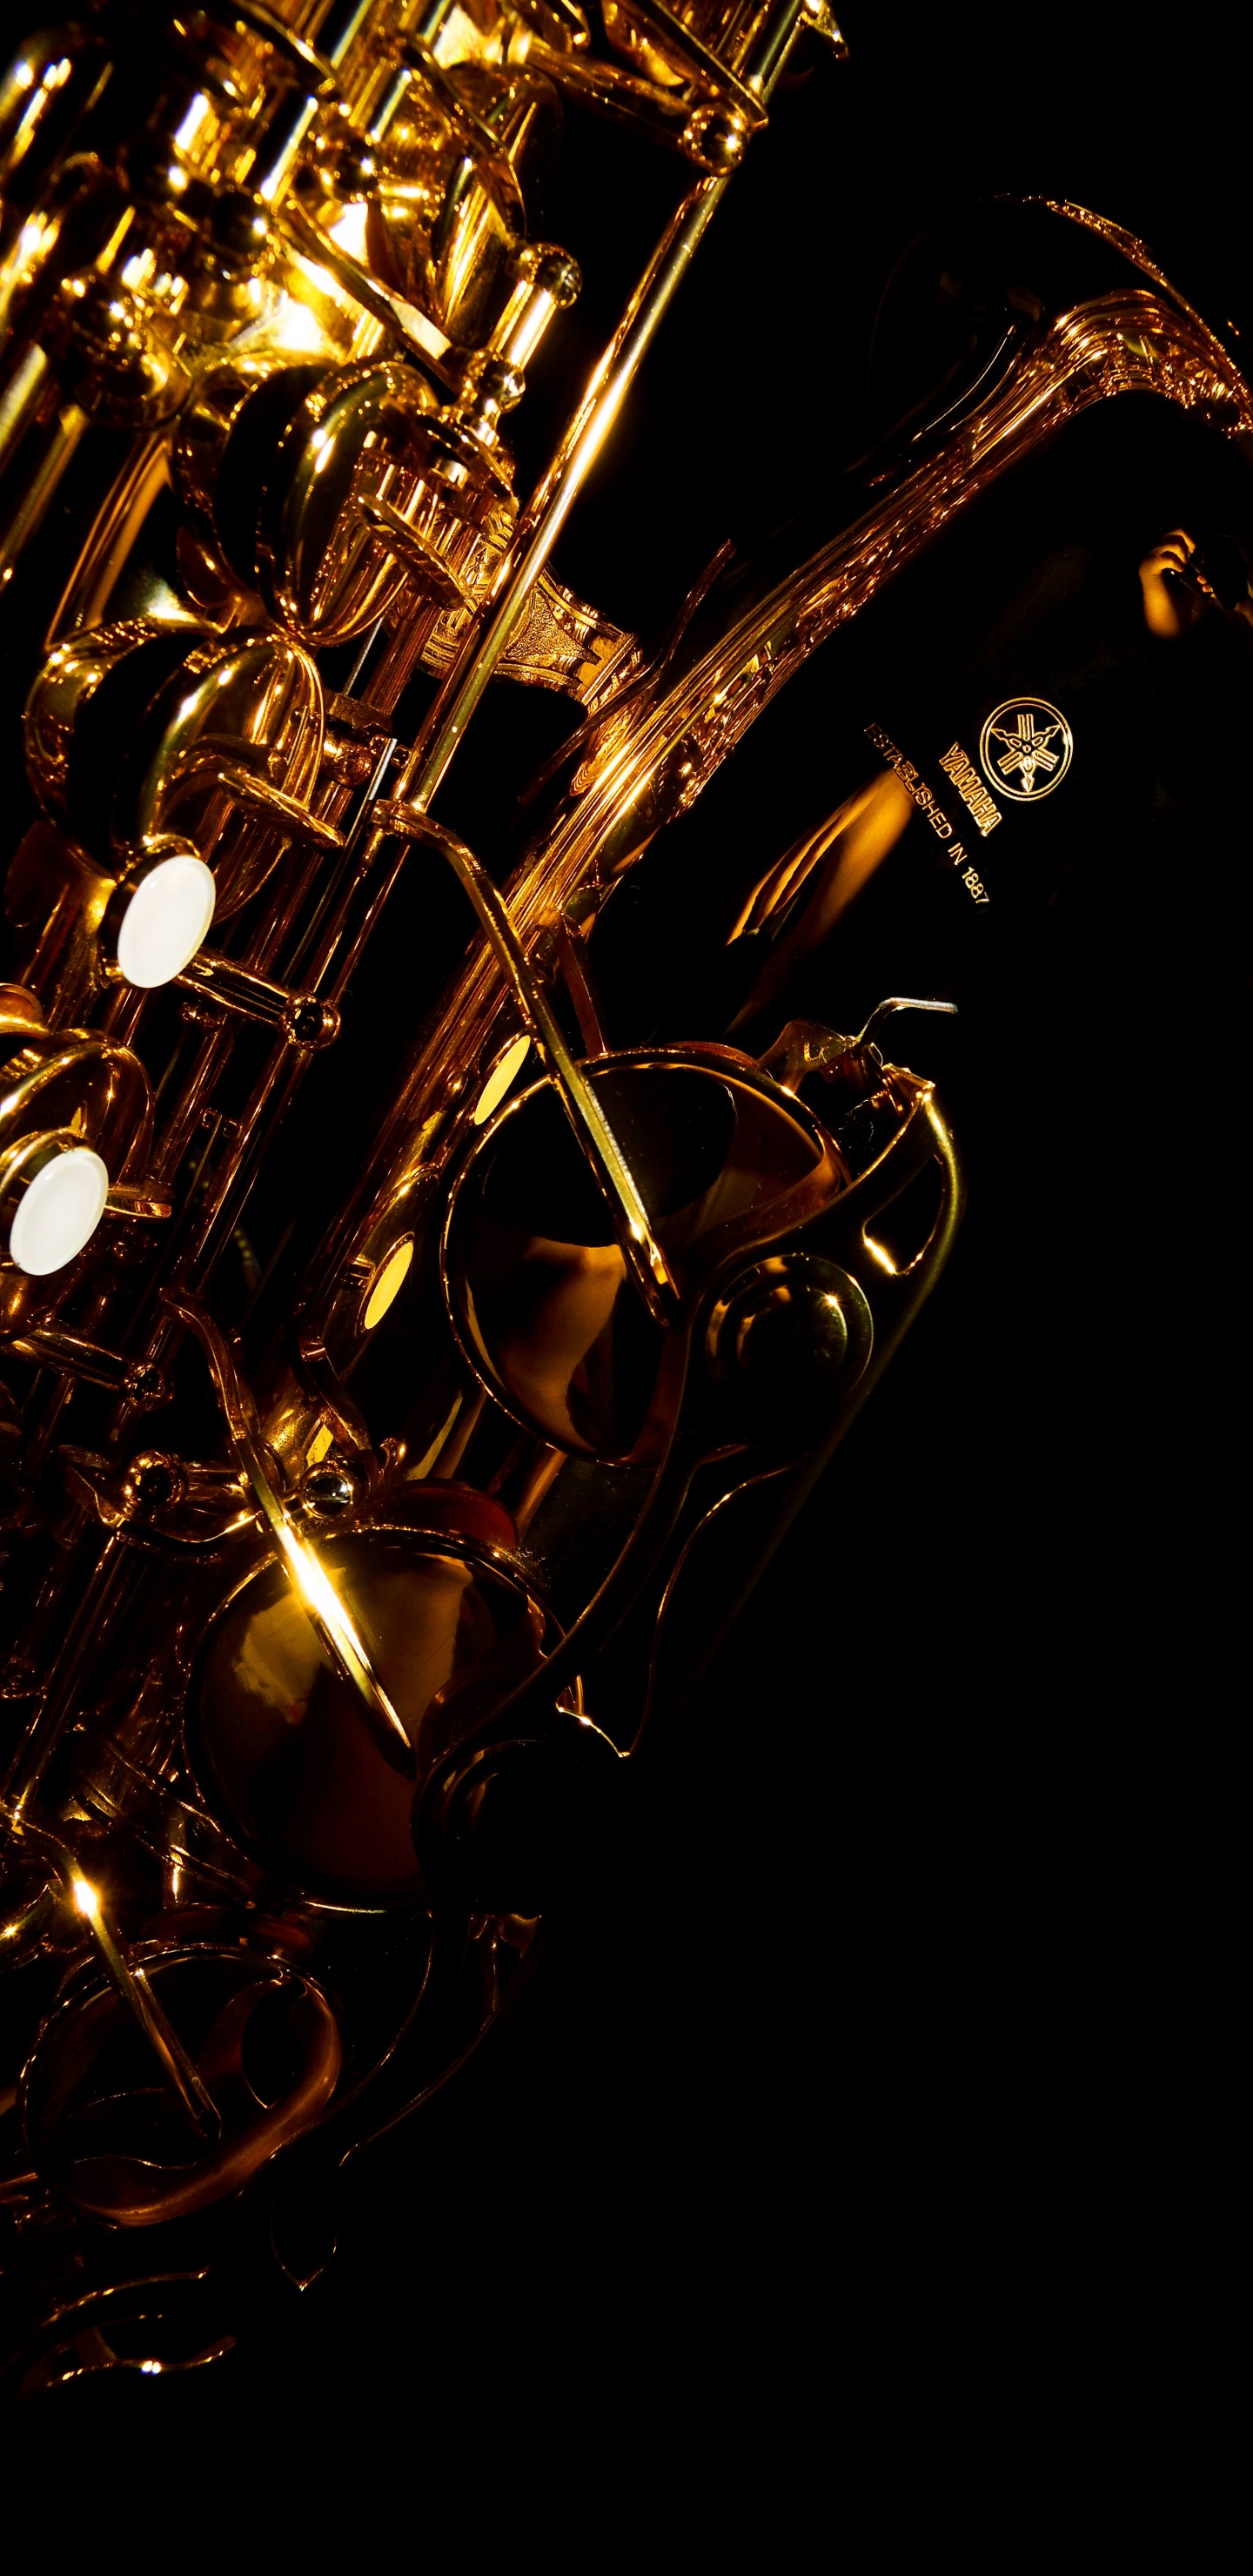 Trompette, Saxophone, Instrument de Cuivre, Instrument à Vent, Instrument de Musique. Wallpaper in 1440x2960 Resolution